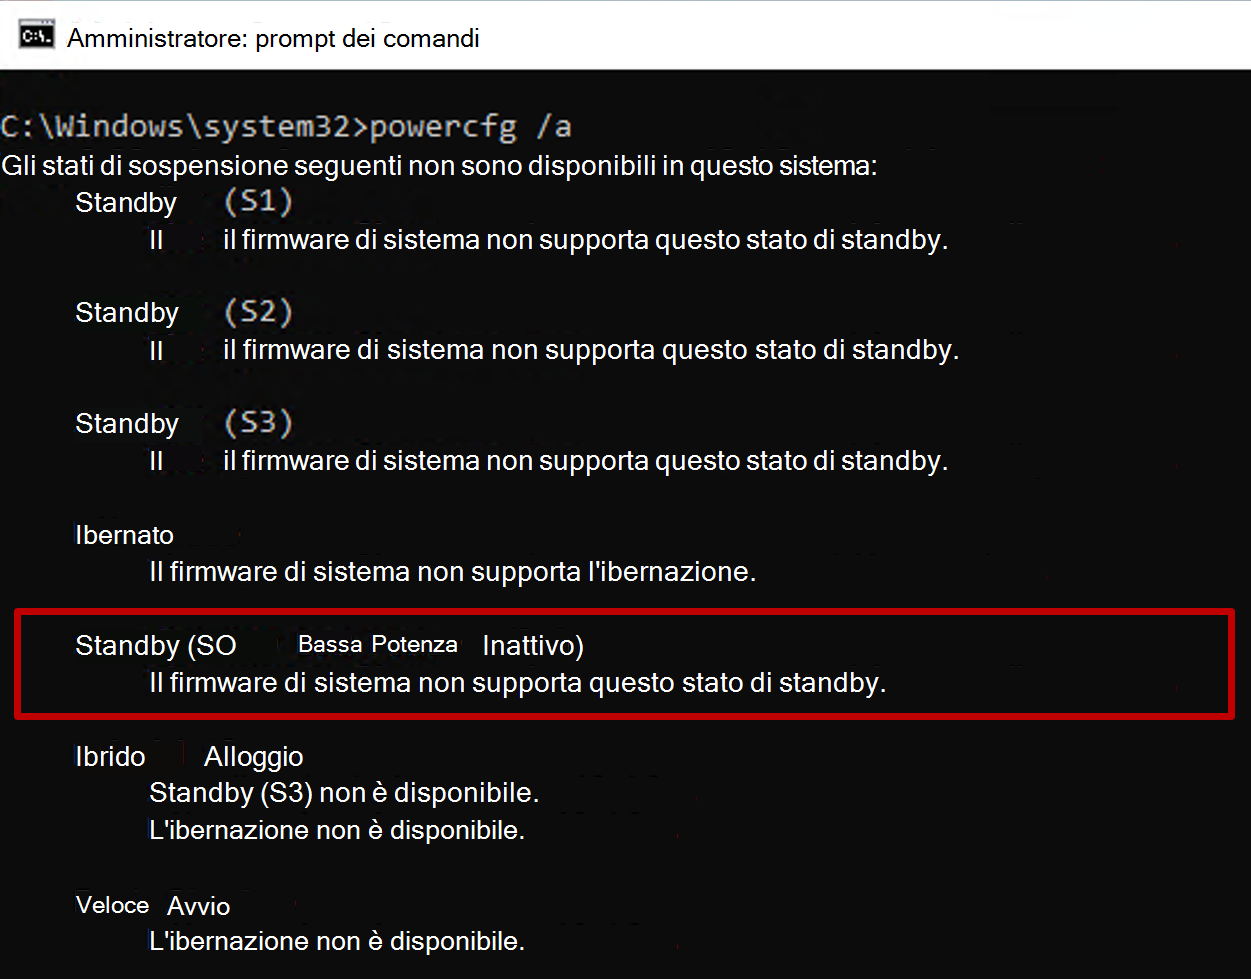 Screenshot del prompt dei comandi che mostra l'output del comando powercfg con stato Standby S0 non disponibile.